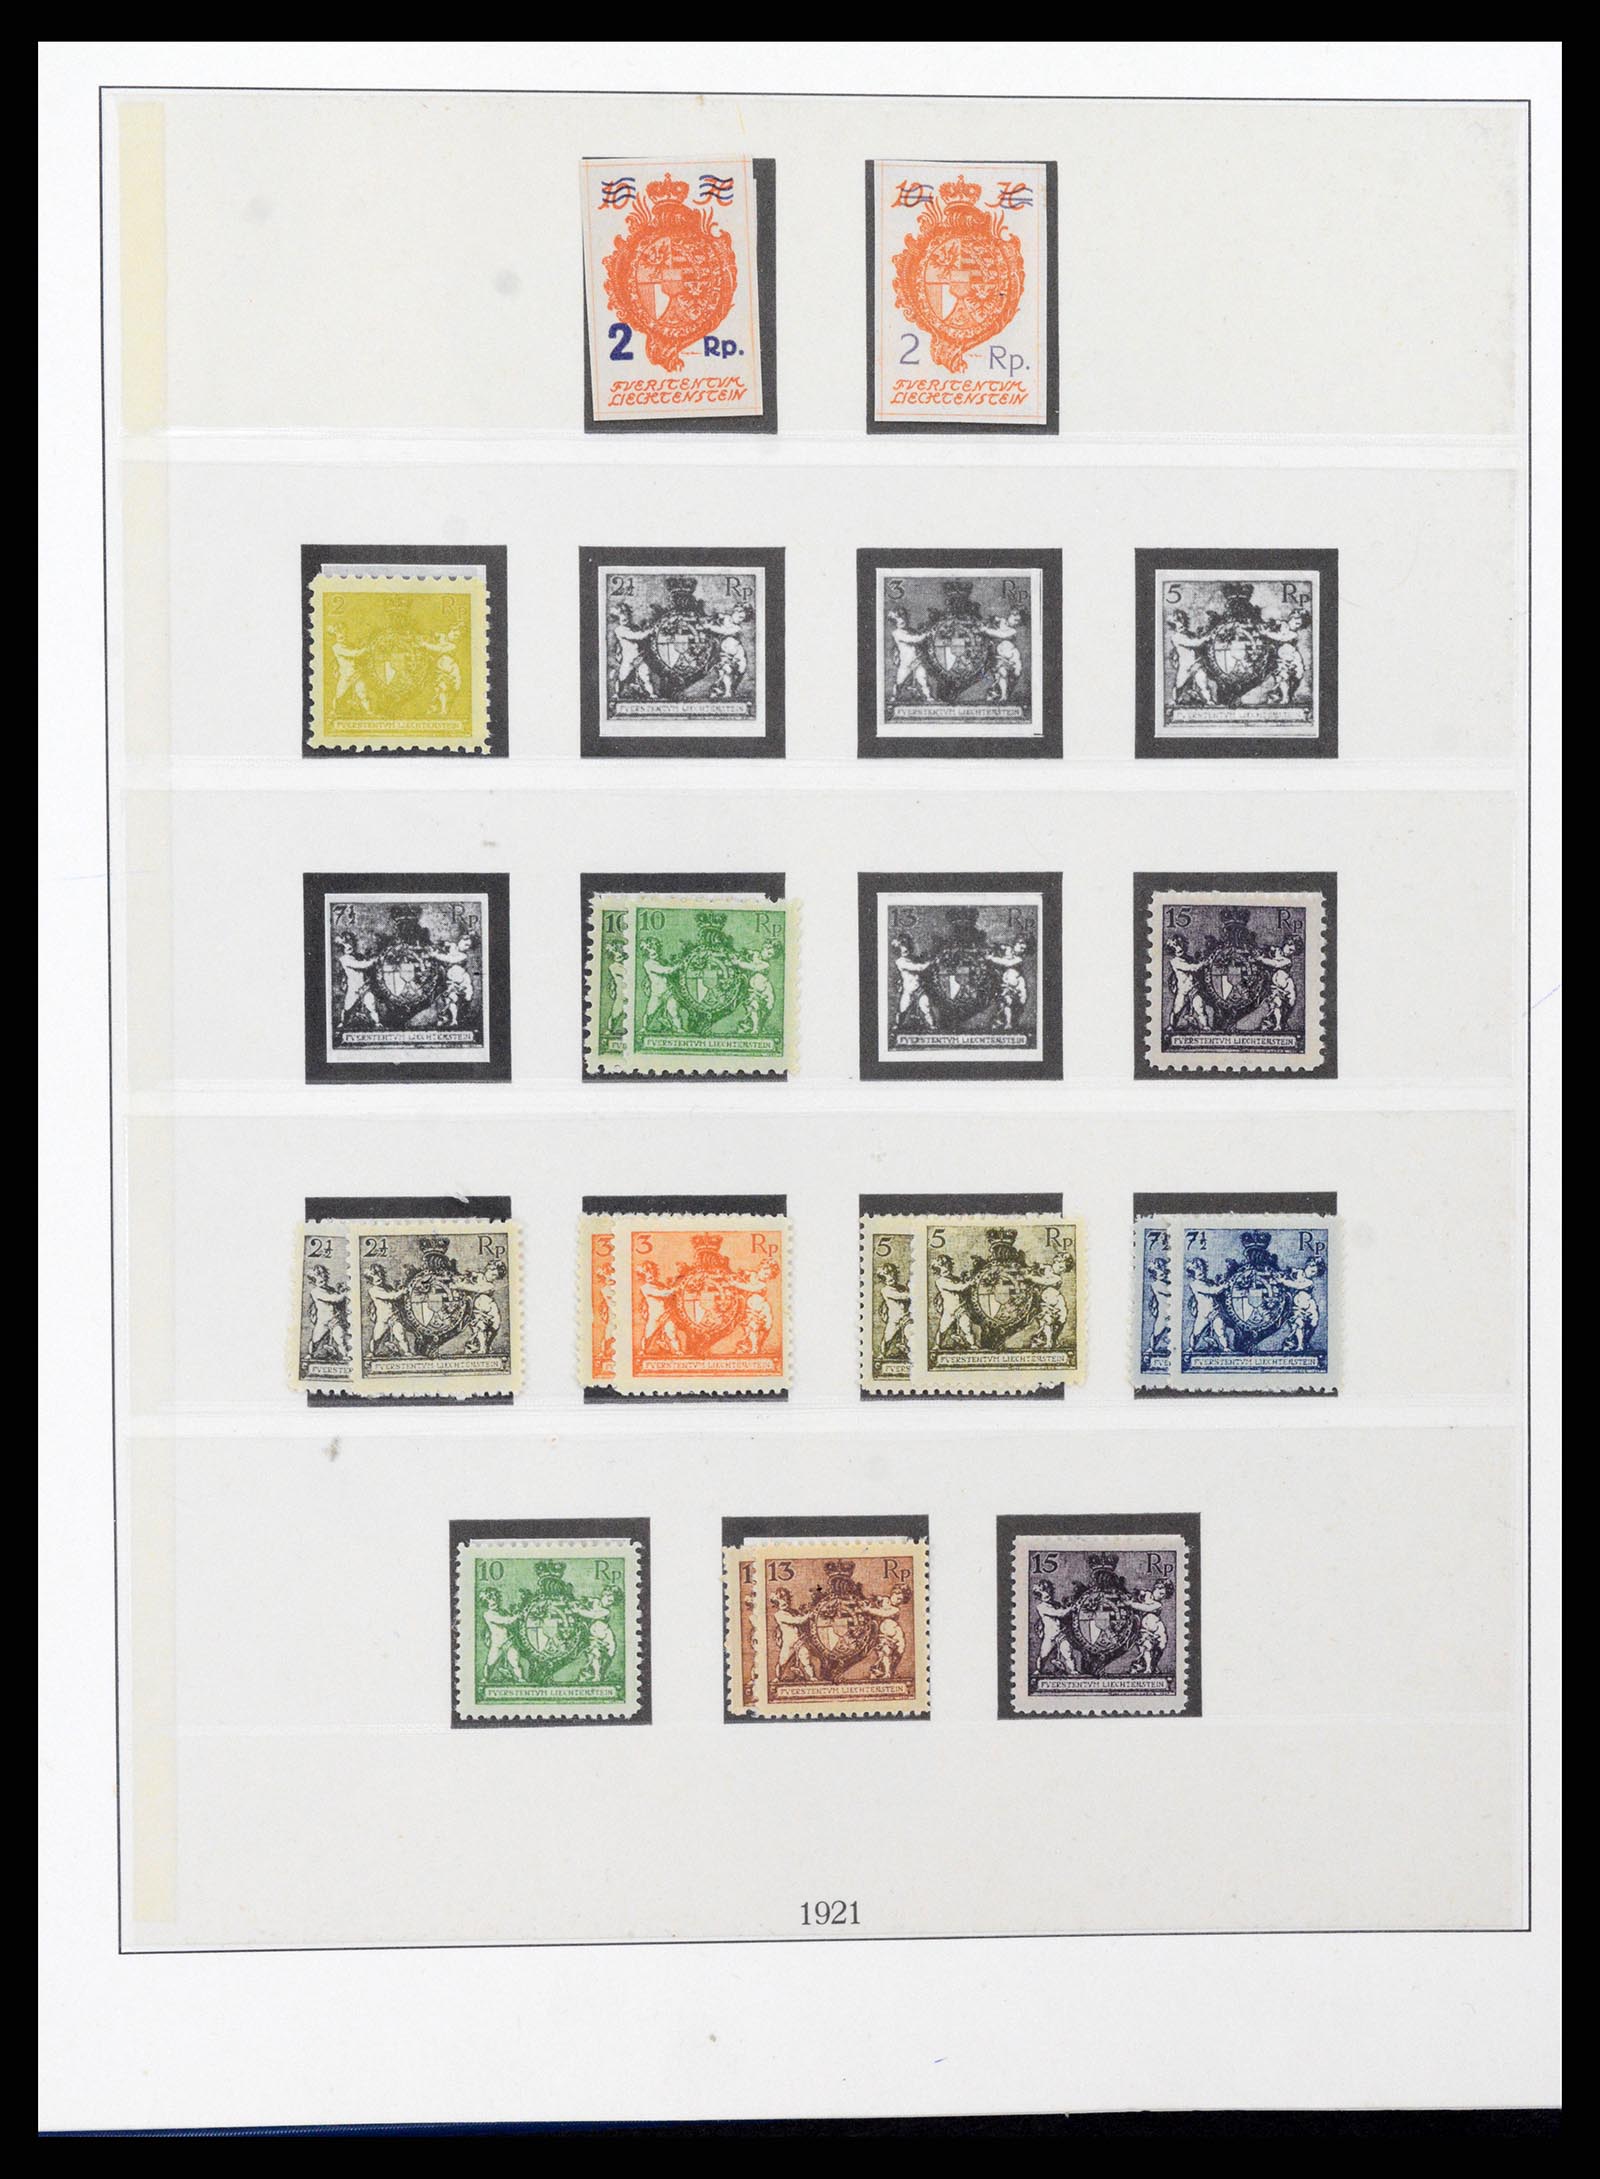 37295 005 - Stamp collection 37295 Liechtenstein 1912-2009.